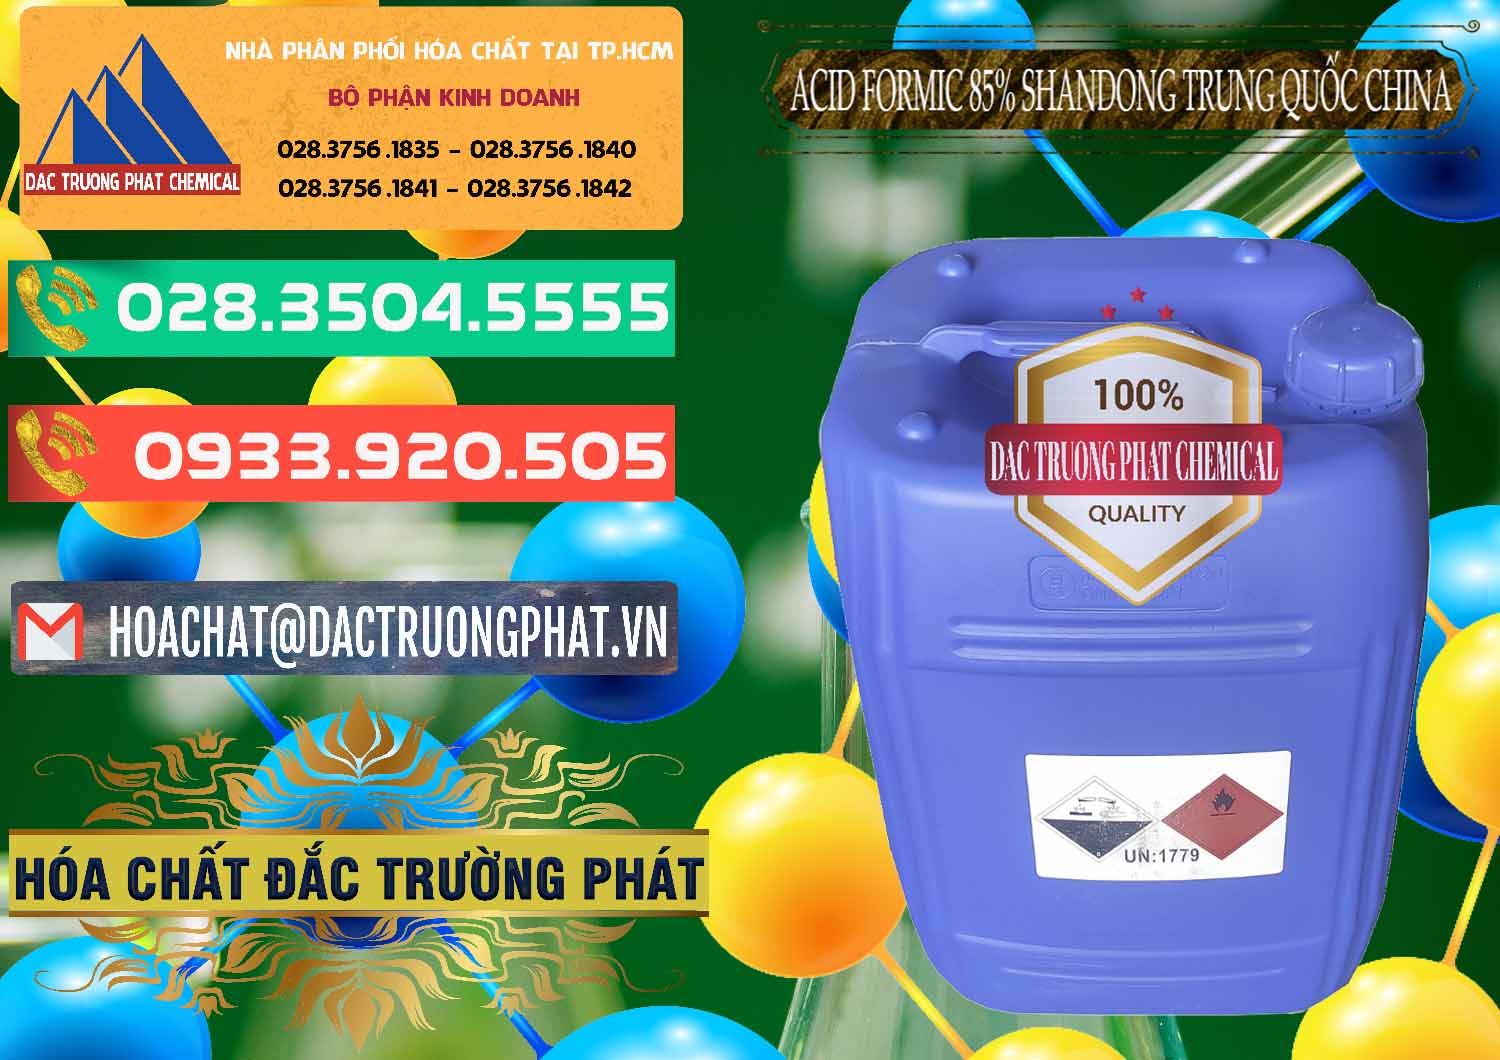 Cty chuyên nhập khẩu ( bán ) Acid Formic - Axit Formic 85% Shandong Trung Quốc China - 0235 - Nơi chuyên cung cấp và kinh doanh hóa chất tại TP.HCM - congtyhoachat.com.vn